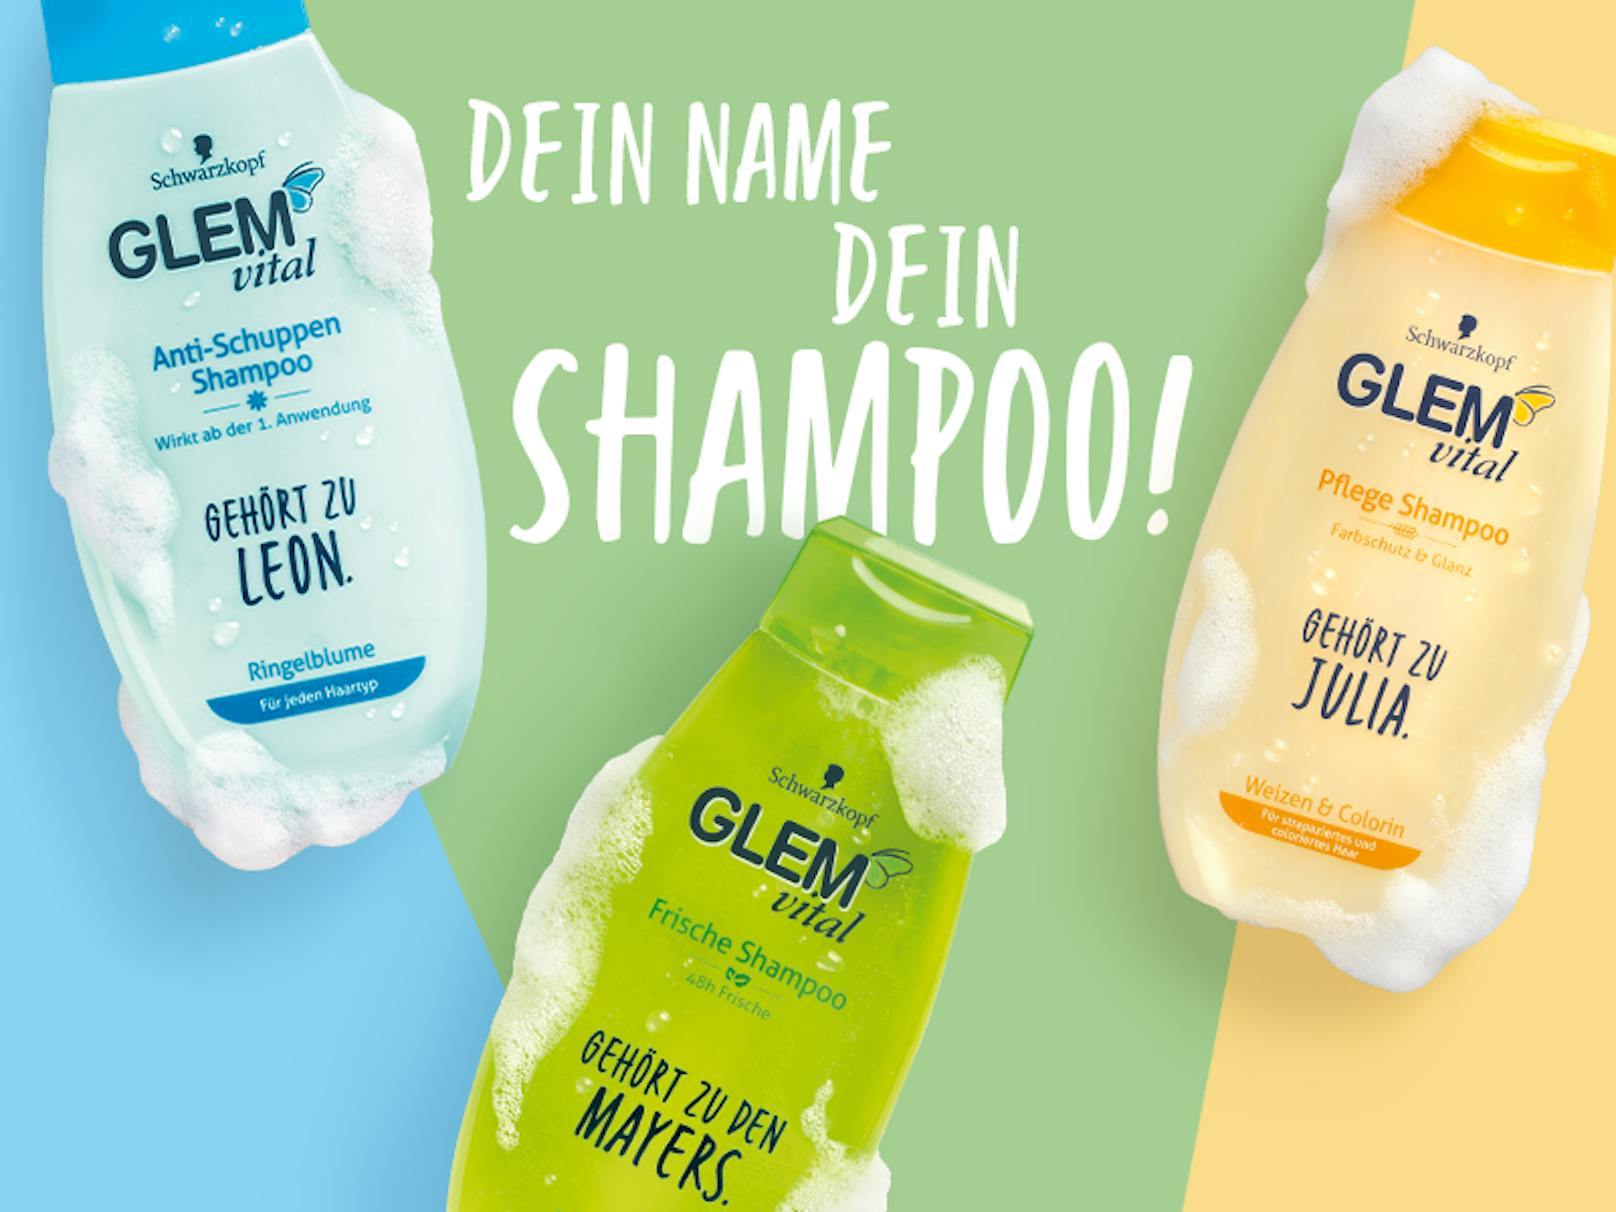 Jetzt teilnehmen und ein personalisiertes Shampoo-Paket von Glem Vital gewinnen!